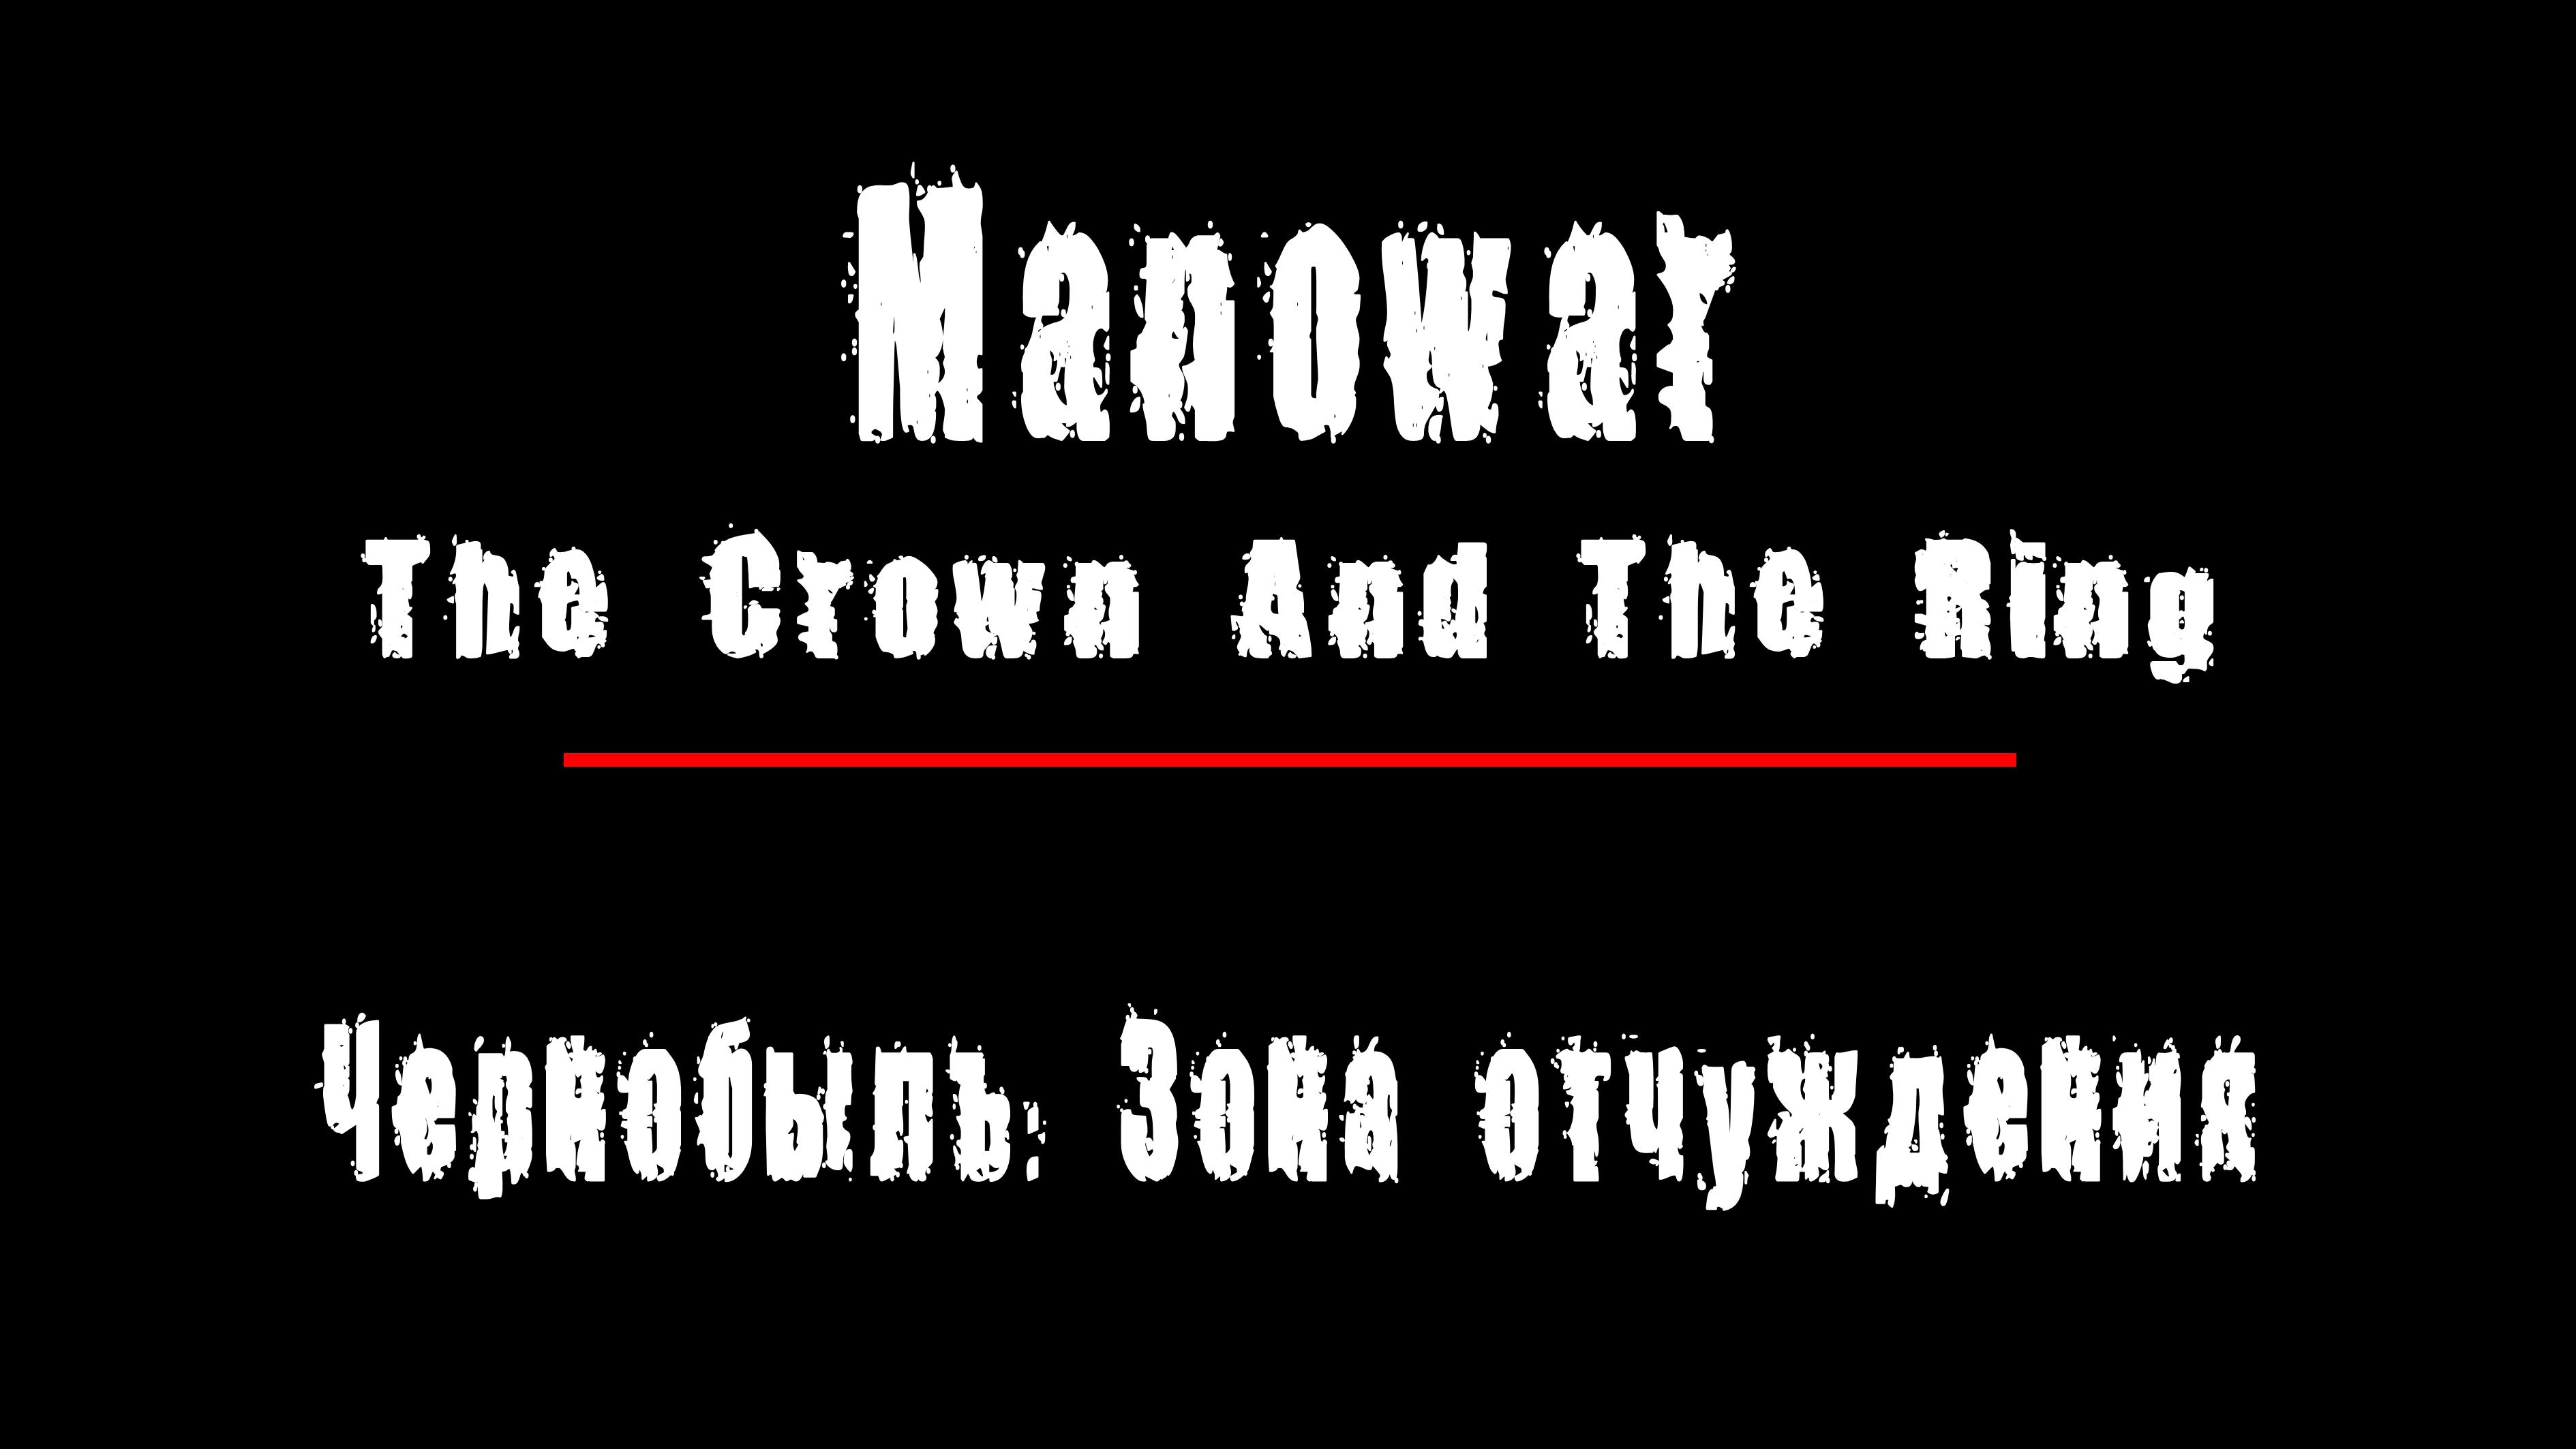 "THE CROWN AND THE RING" - группа "Manowar". Чернобыль: Зона Отчуждения, Припять.